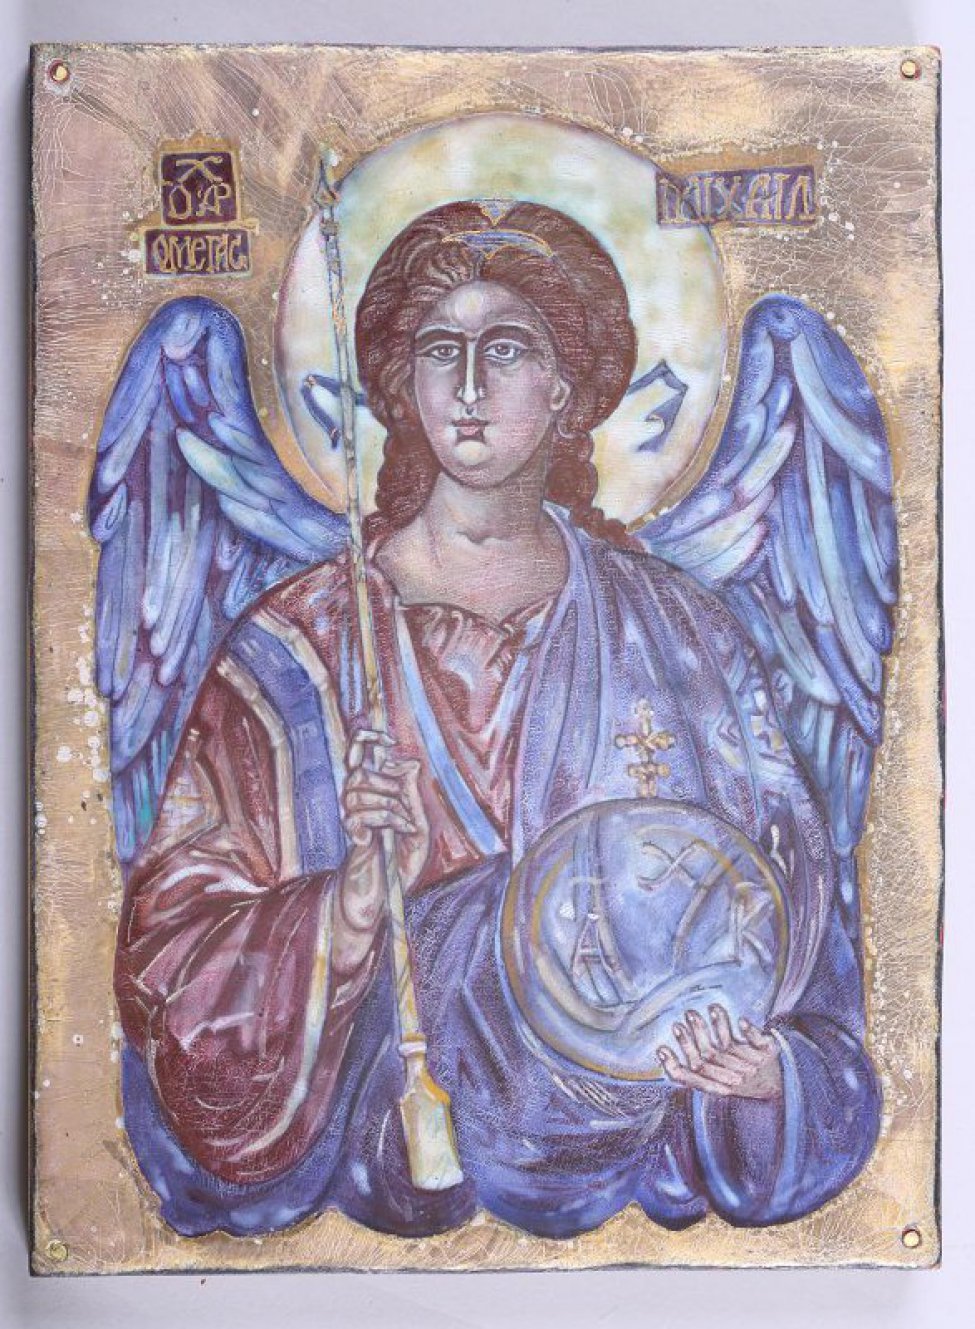 На медной пластине, закрепленной по углам гвоздями к деревянной доске, дано поясное изображение архангела Михаила. В правой руке его короткий посох (мерило), в левой руке -  сфера с монограммами "А","Х", "К" под титлами. Хитон архангела пурпурного цвета;  плащ,  крылья, лента в волосах и слухи  синего цвета. Нимб - бледные оттенки зеленоватого, голубоватого цветов.Общий фон светло-коричневый кракеллированный, частично покрытый "под потертость" золотом. Вверху по сторонам от головы три отдельных темно-коричневых поля с надписями золотом: "О АР Х", "ОМЕГАС", "МIХАIЛ".